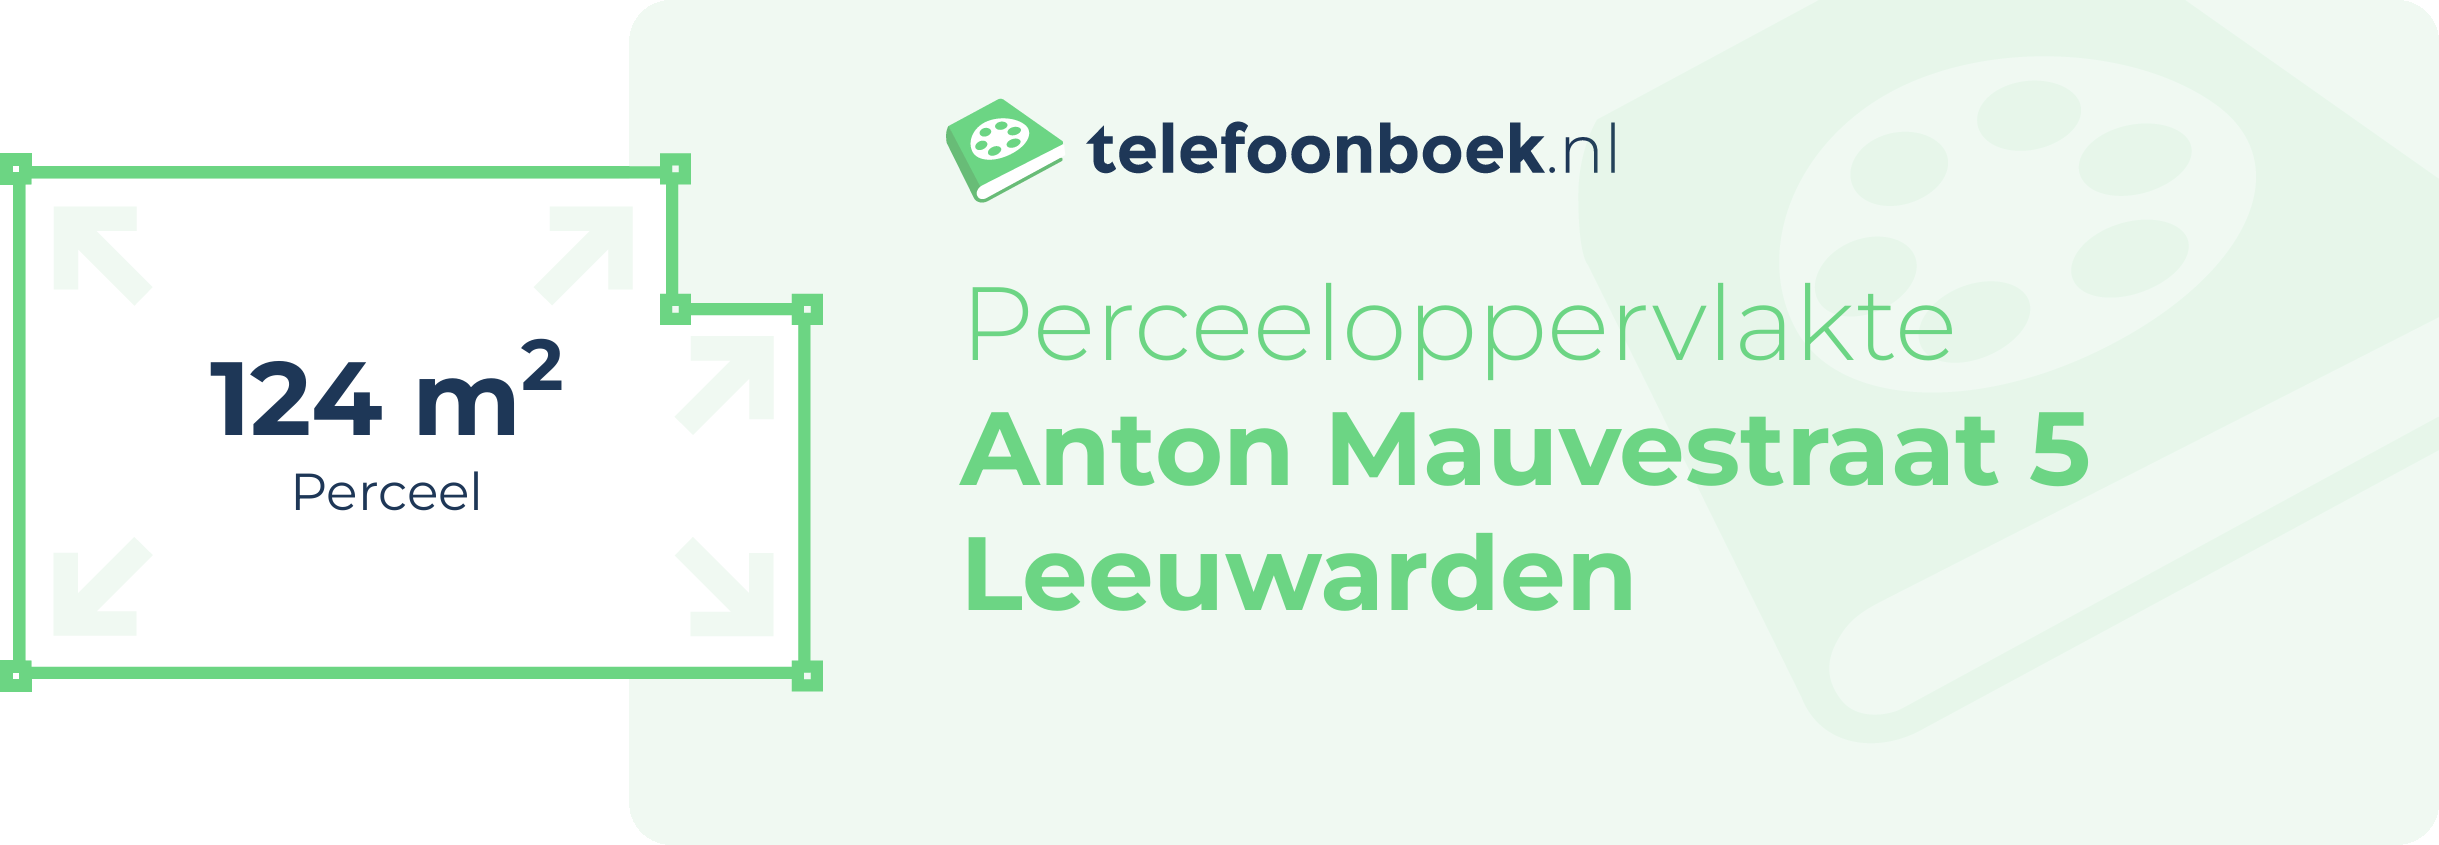 Perceeloppervlakte Anton Mauvestraat 5 Leeuwarden